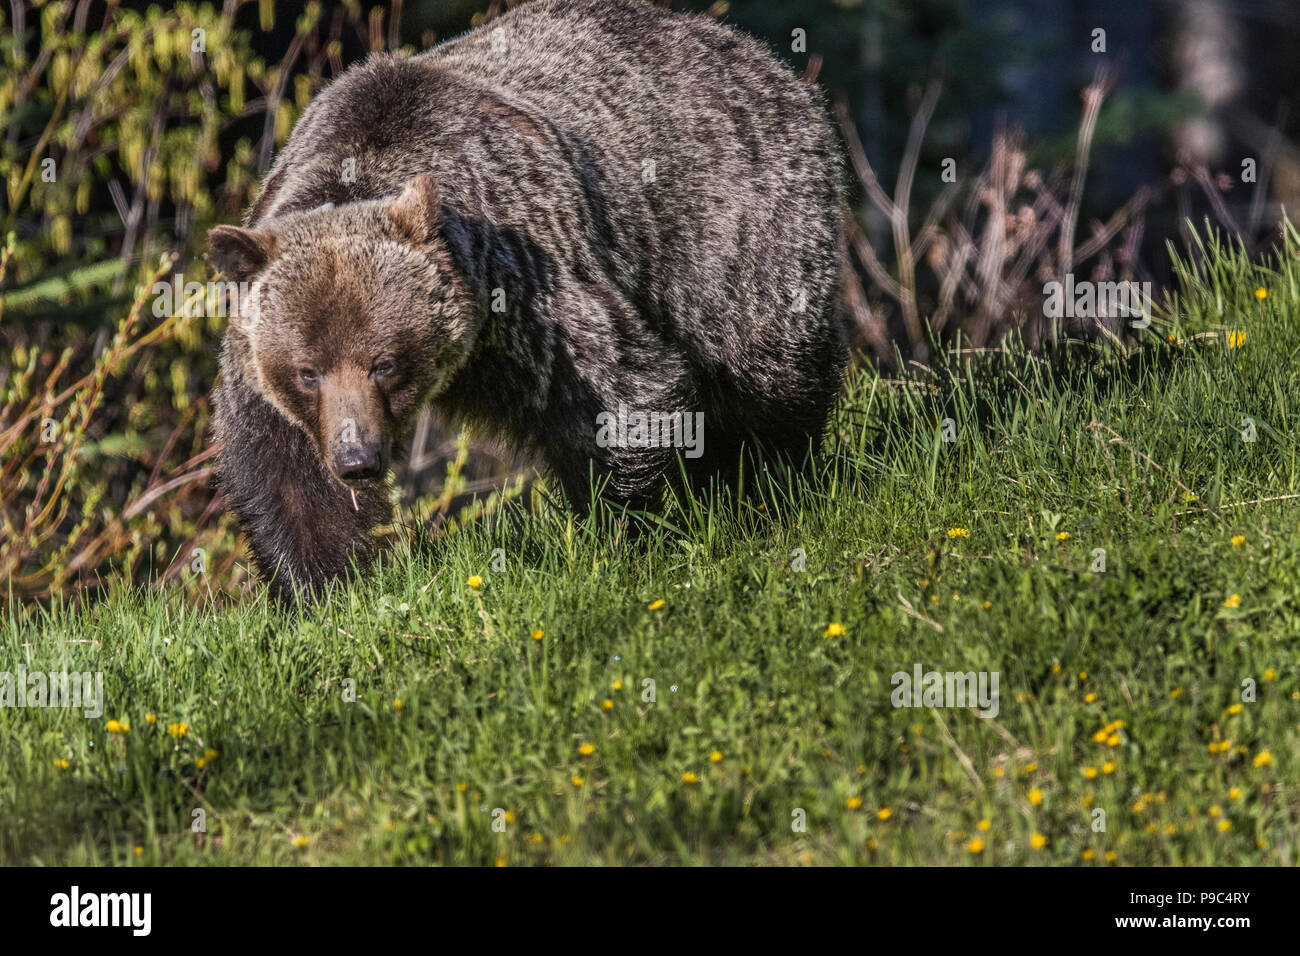 Grizzlybär (Ursus arctos Horribilis) Kopf auf Augenhöhe, geschossen von weiblichen Grizzly, an der Kamera suchen, im Löwenzahn Feld. Stockfoto